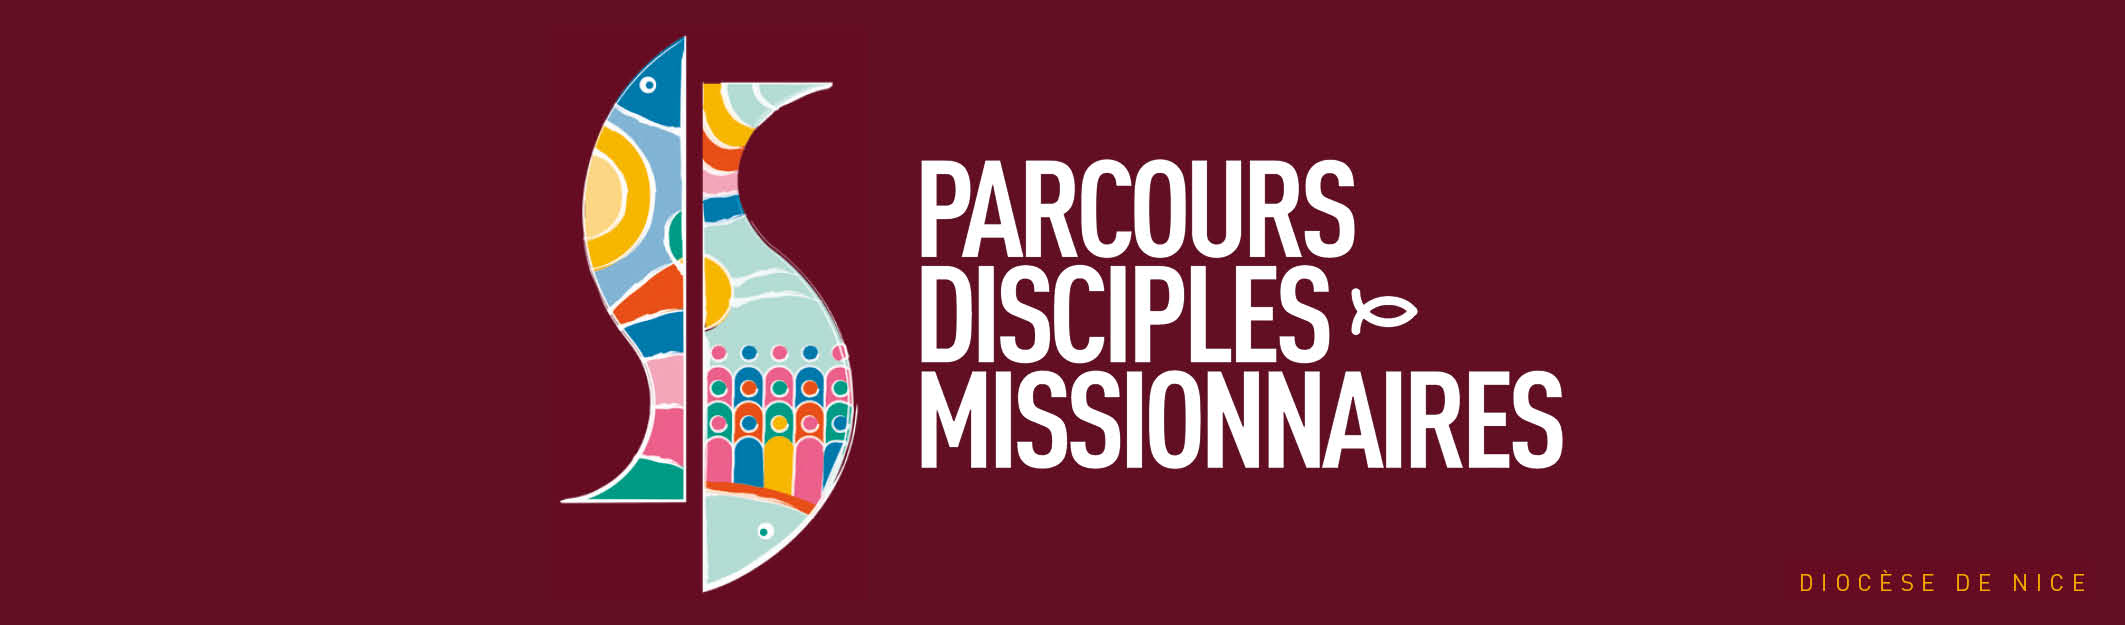 Parcours disciples-missionnaires